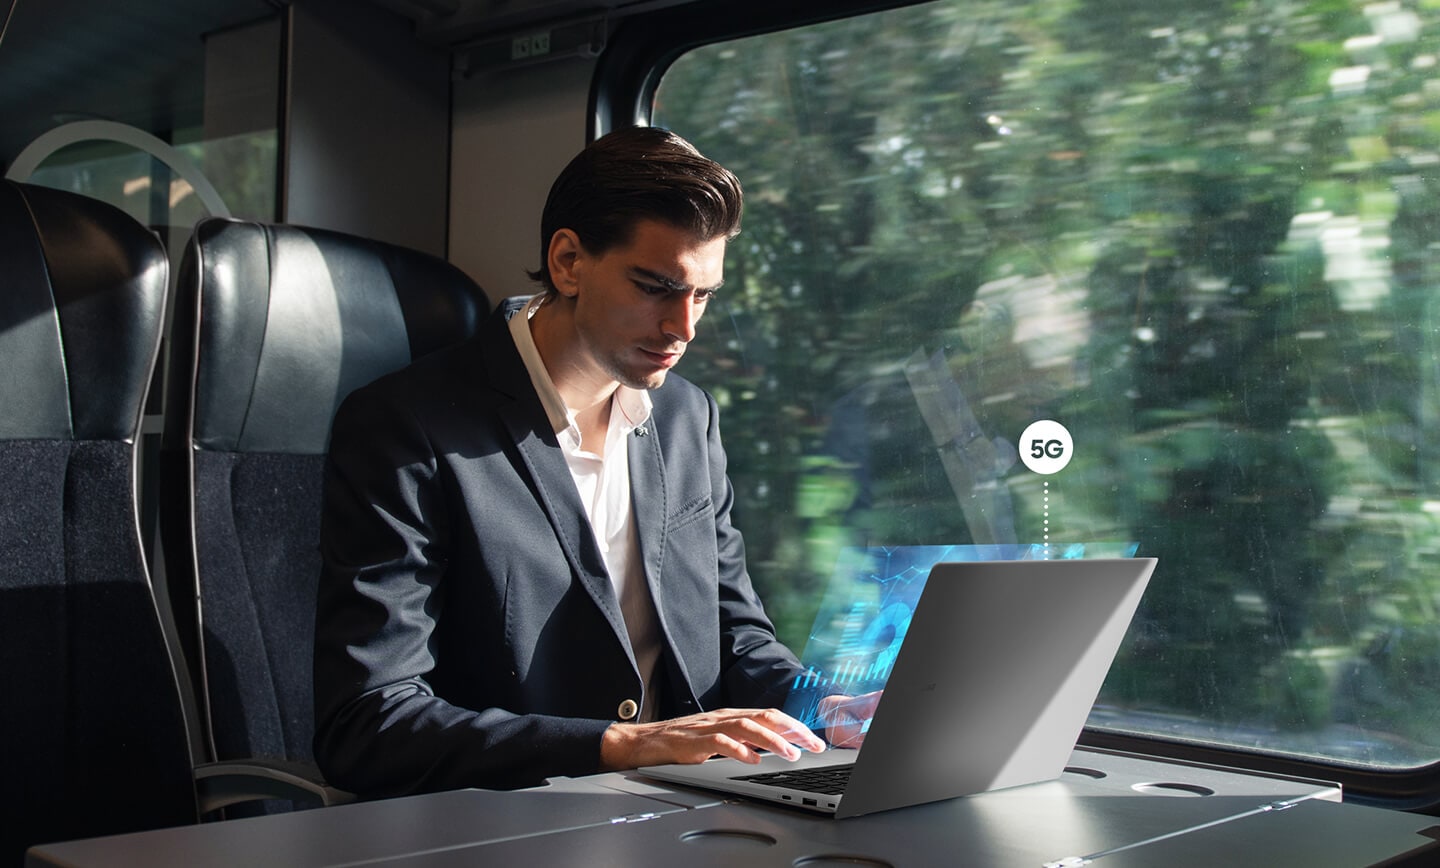 Un homme utilise le Galaxy Book2 Go assis près de la fenêtre d’un train en marche. Le symbole 5G est affiché au-dessus de l'ordinateur portable.